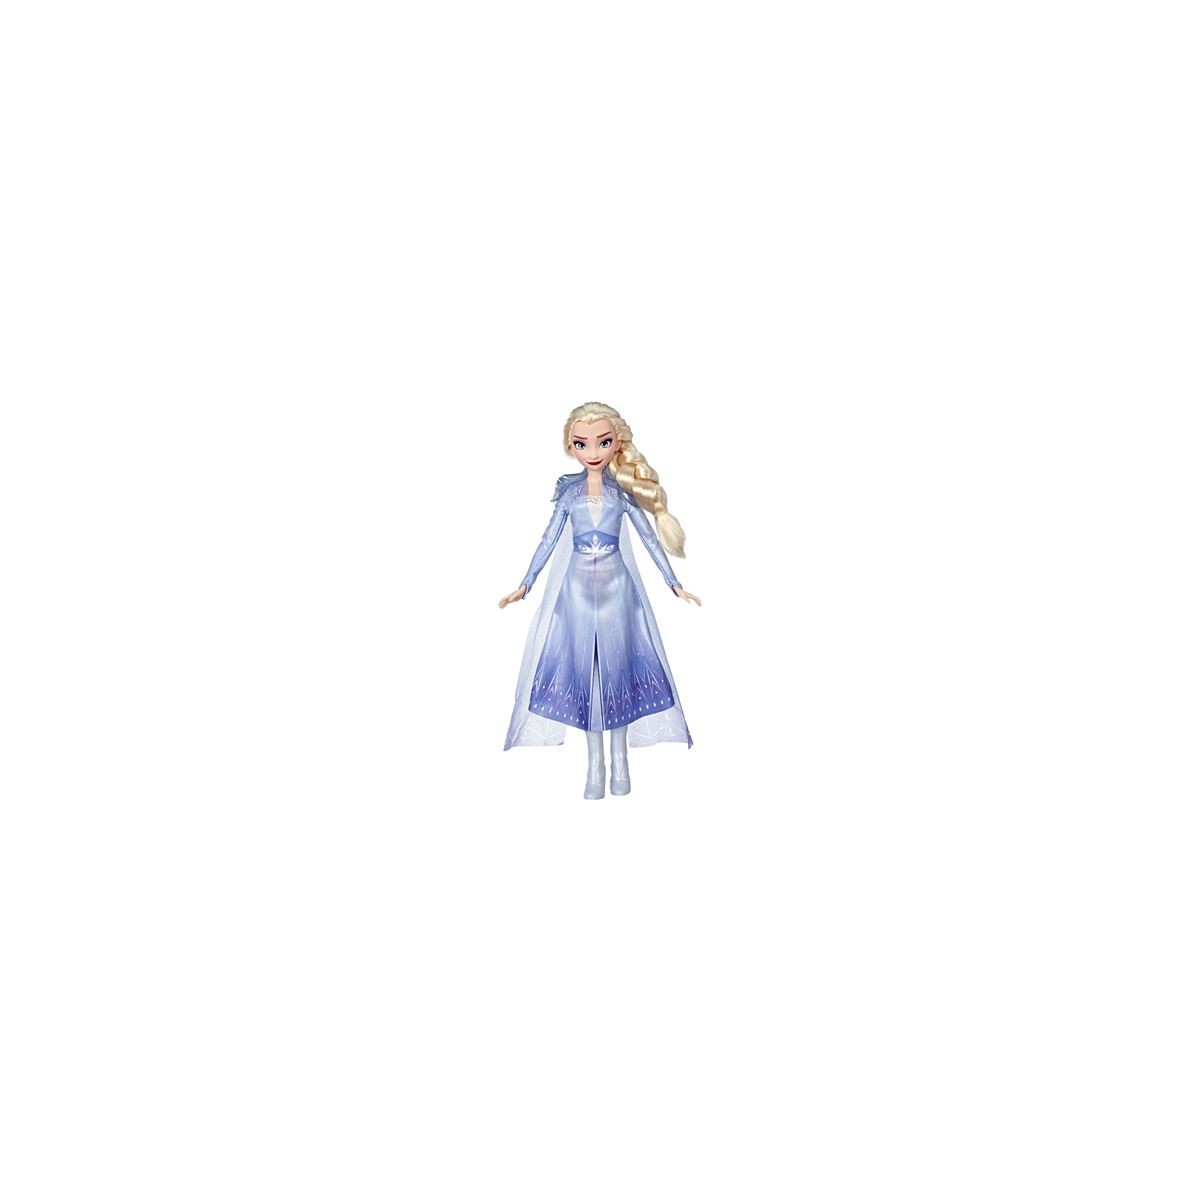 Hasbro - Die Eiskönigin 2 - Elsa Puppe mit langem blondem Haar und blauem Outfit